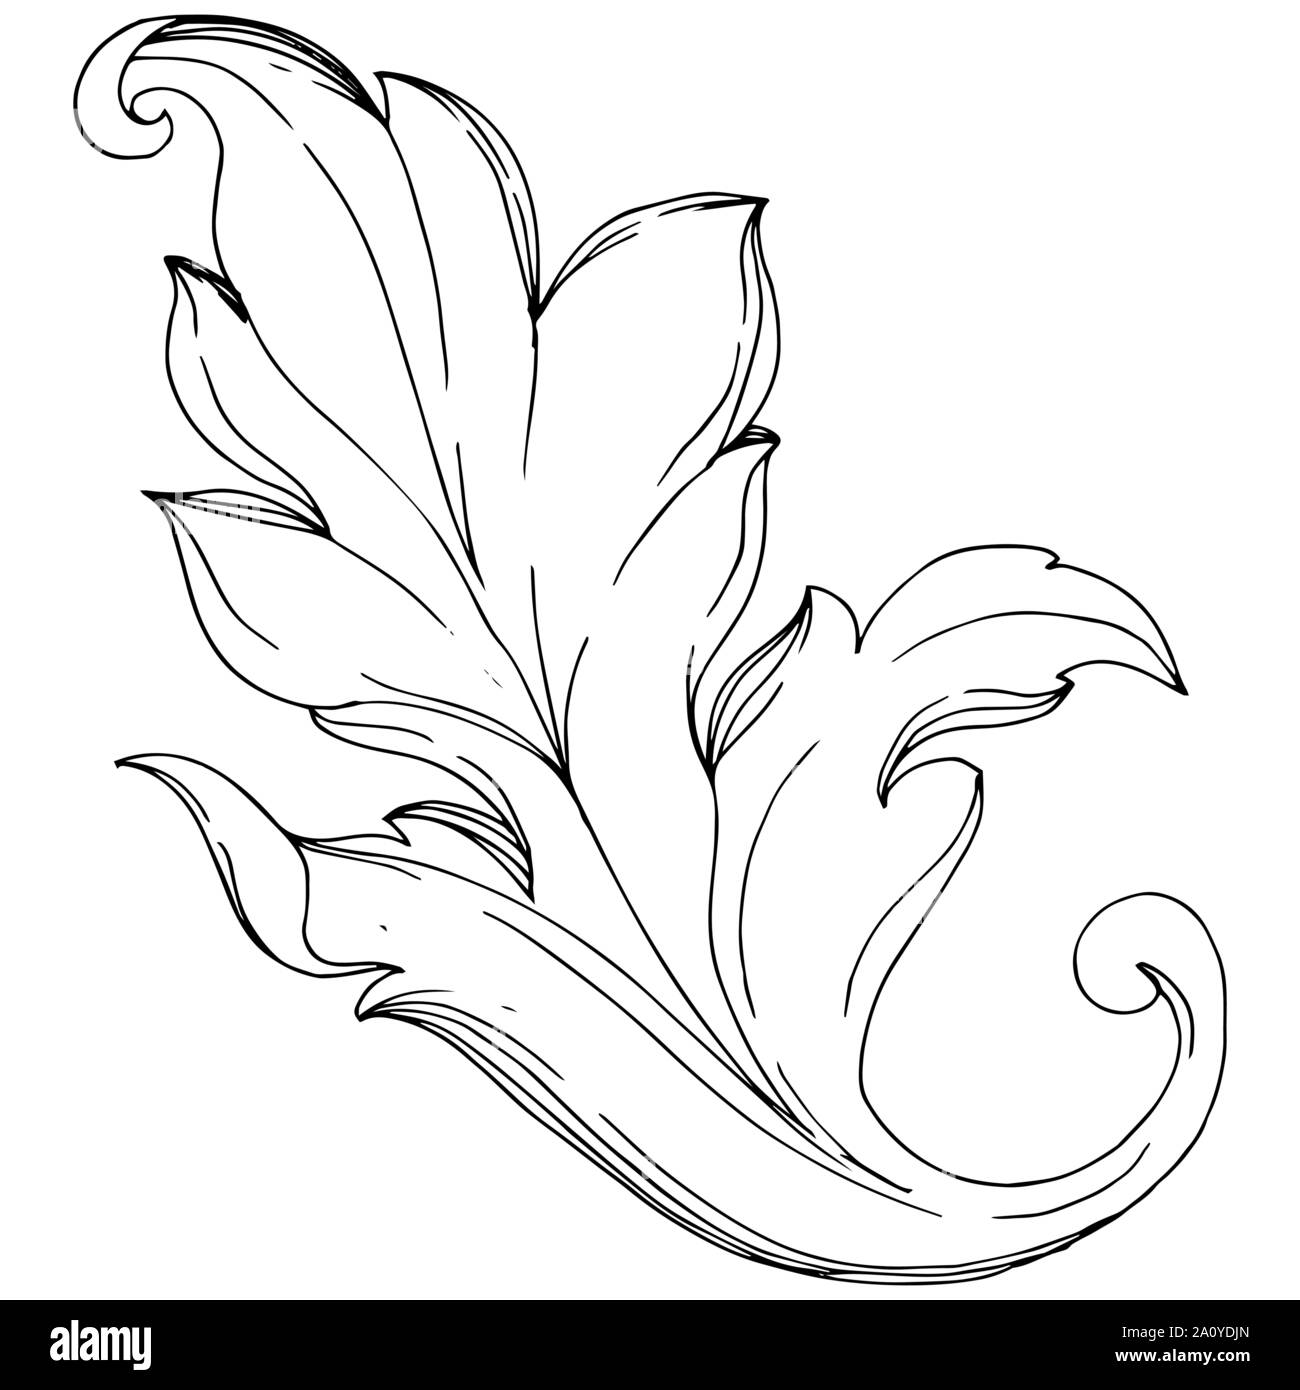 Vektor Barock Monogramm floralen Ornament. Barock design isolierte Elemente. Schwarz und weiß eingraviert Tinte Art isoliert Ornamente Abbildung o Stock Vektor